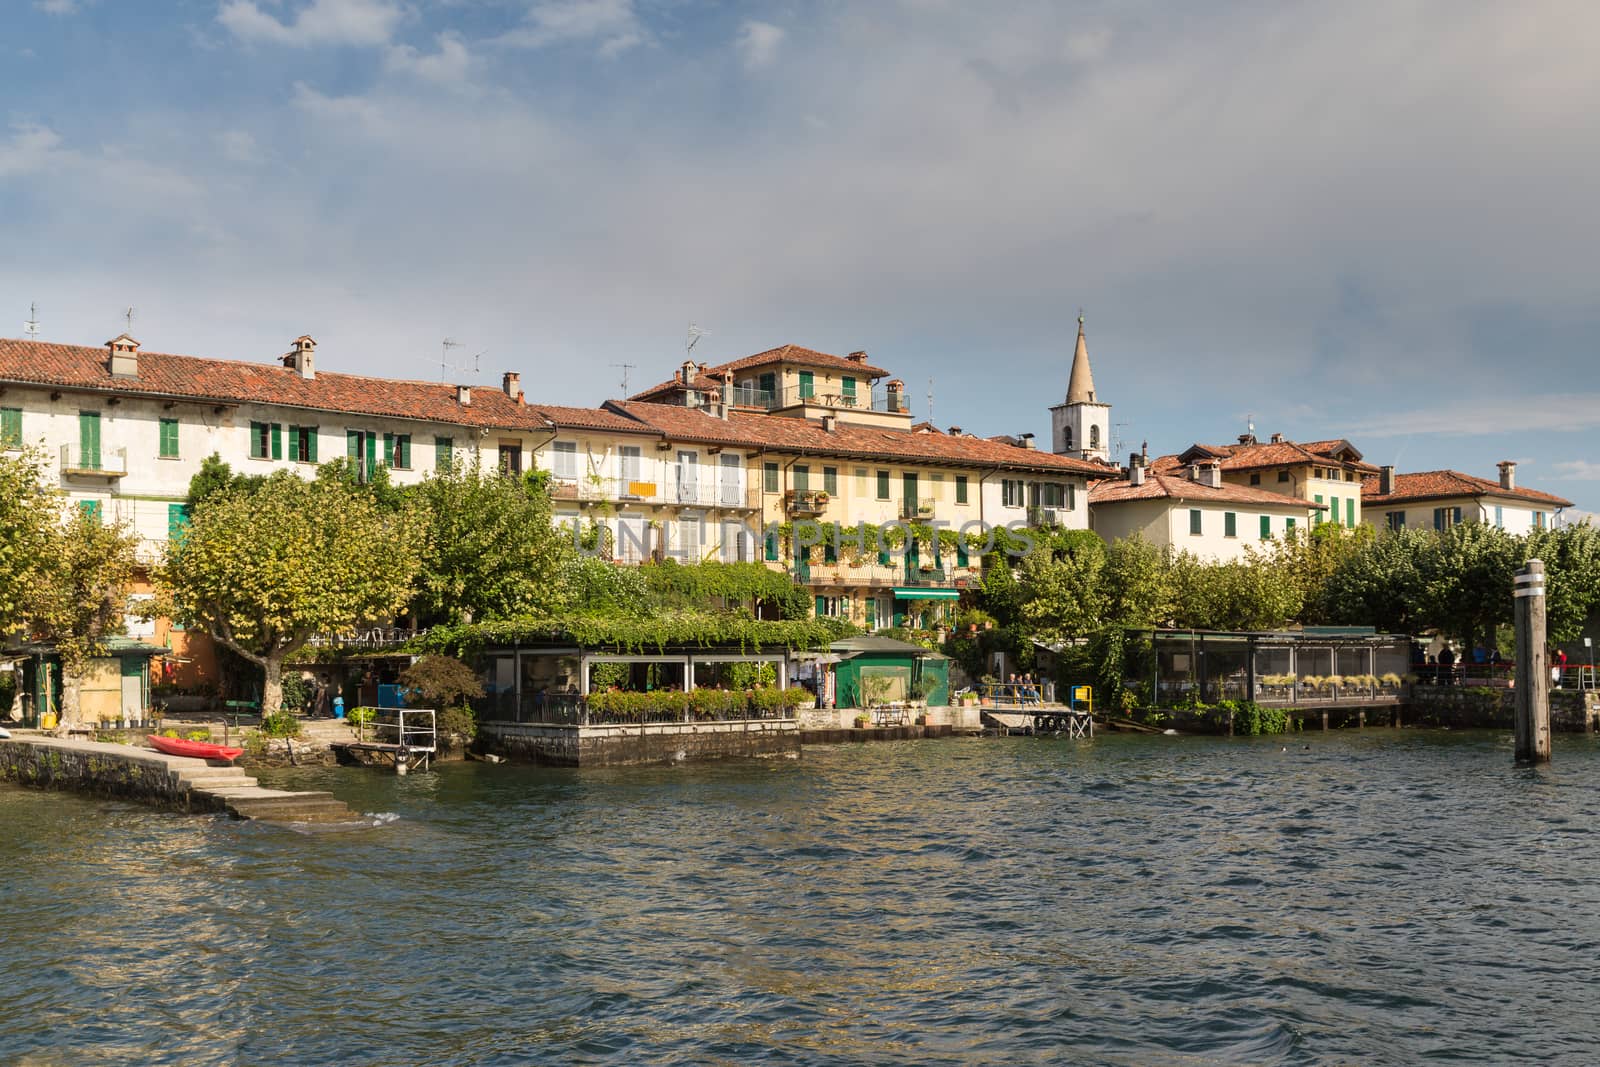 Isola dei Pescatori on Lake Maggiore near Stresa by chrisukphoto